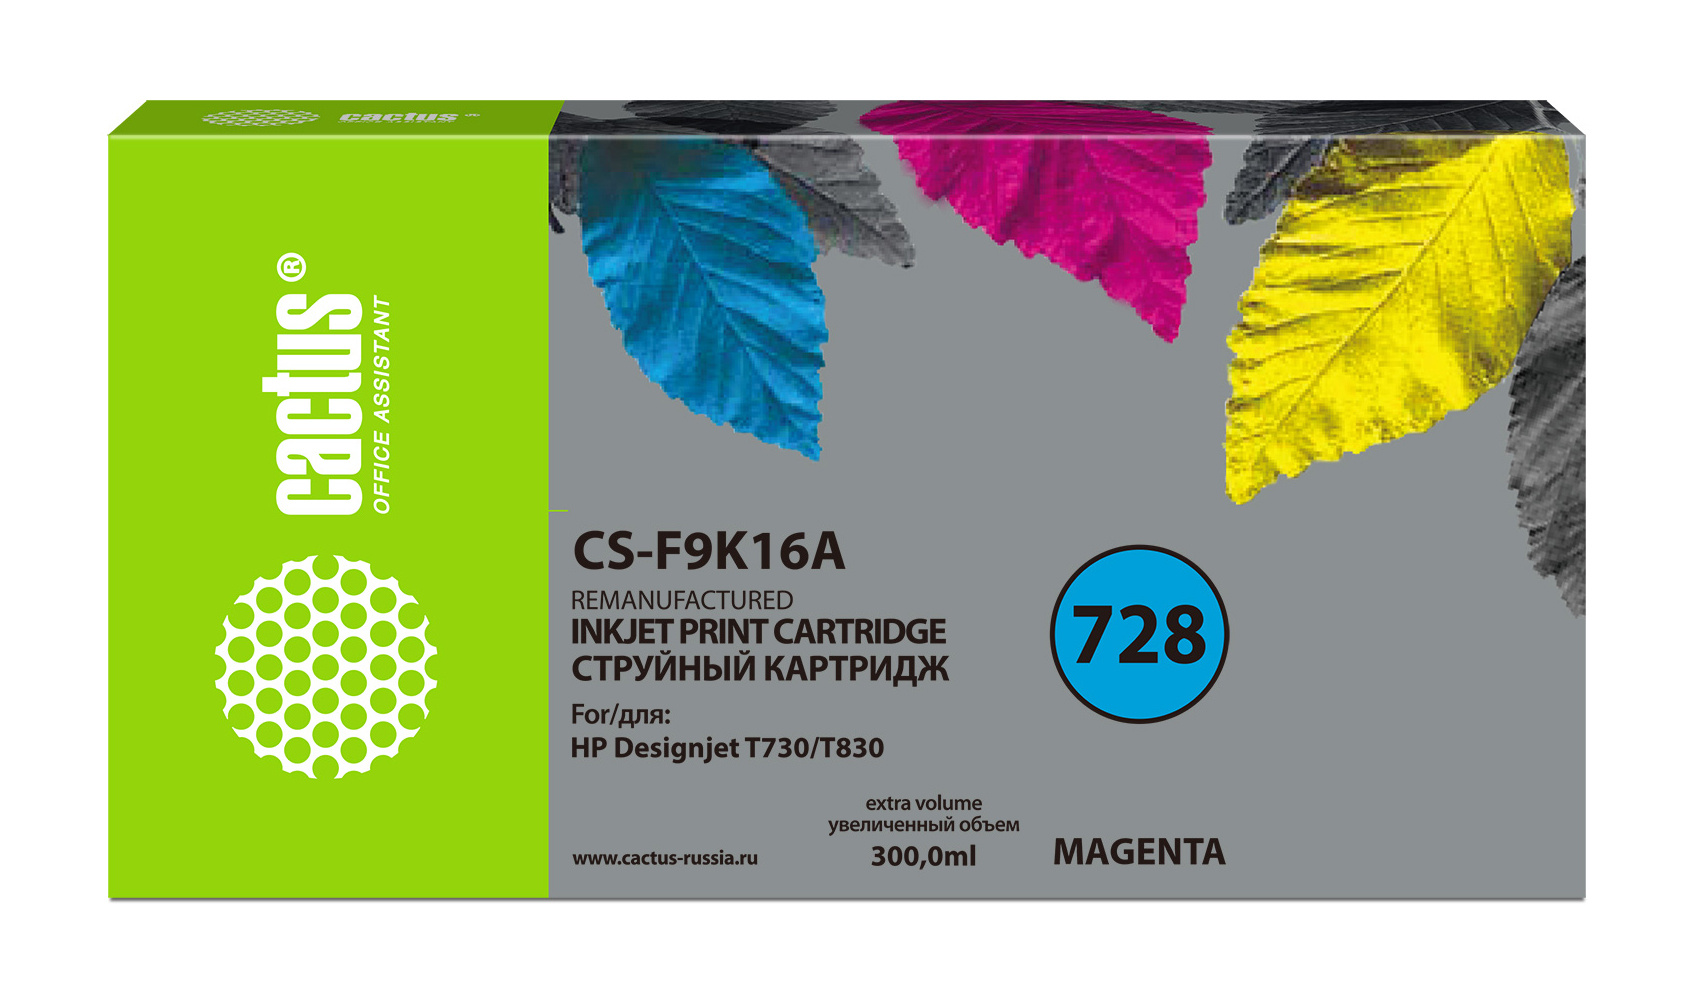 Картридж струйный Cactus CS-F9K16A 728XXL пурпурный (300мл) для HP DesignJet T730, T830 картридж cactus cs f9k17a 728xxl для hp designjet t730 t830 300 мл цвет голубой